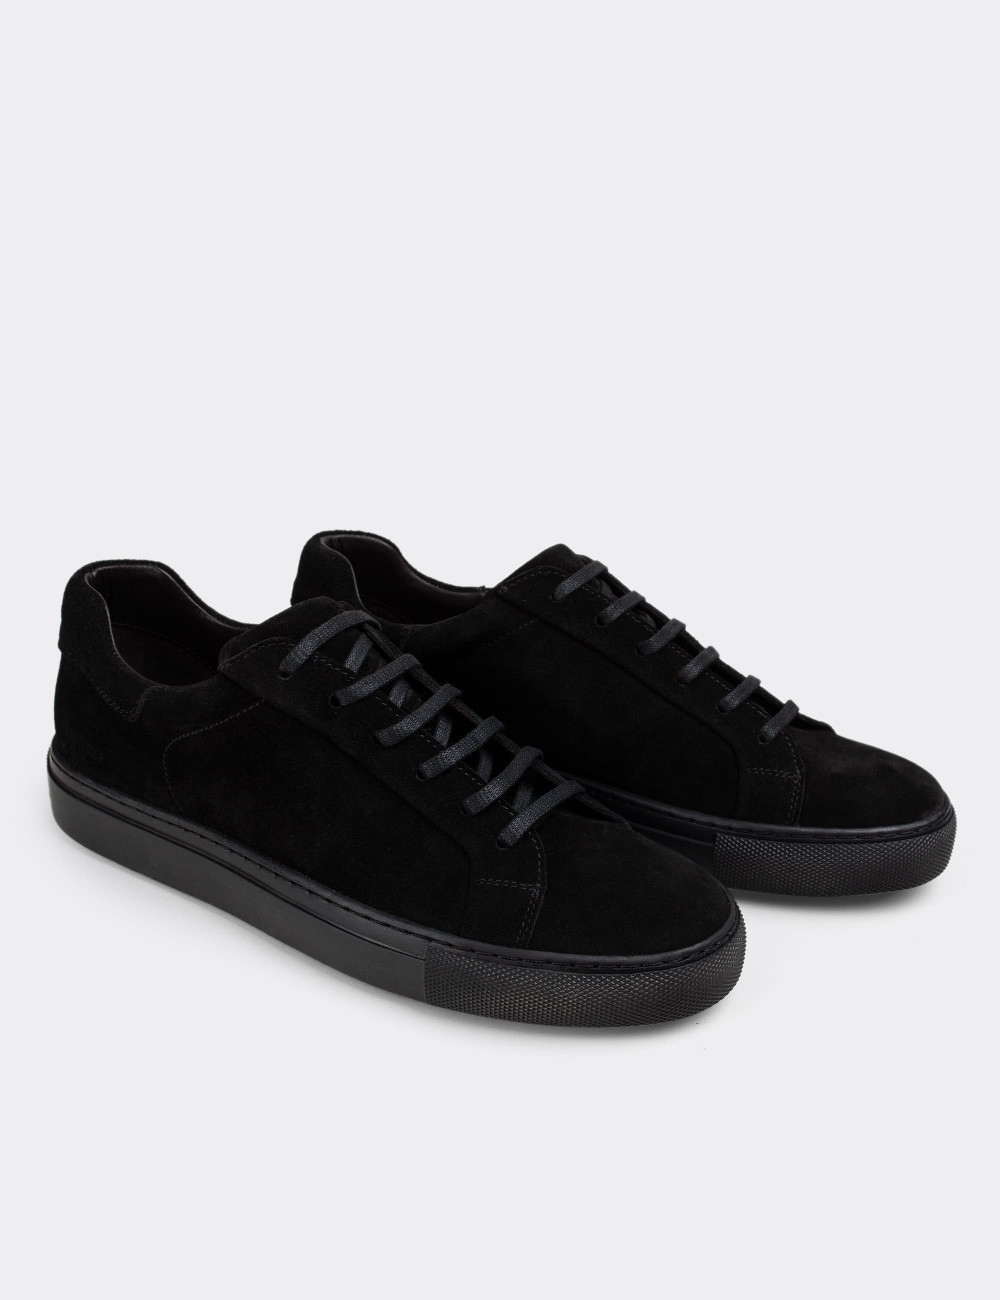 Hakiki Süet Siyah Sneaker Erkek Ayakkabı - 01829MSYHC01